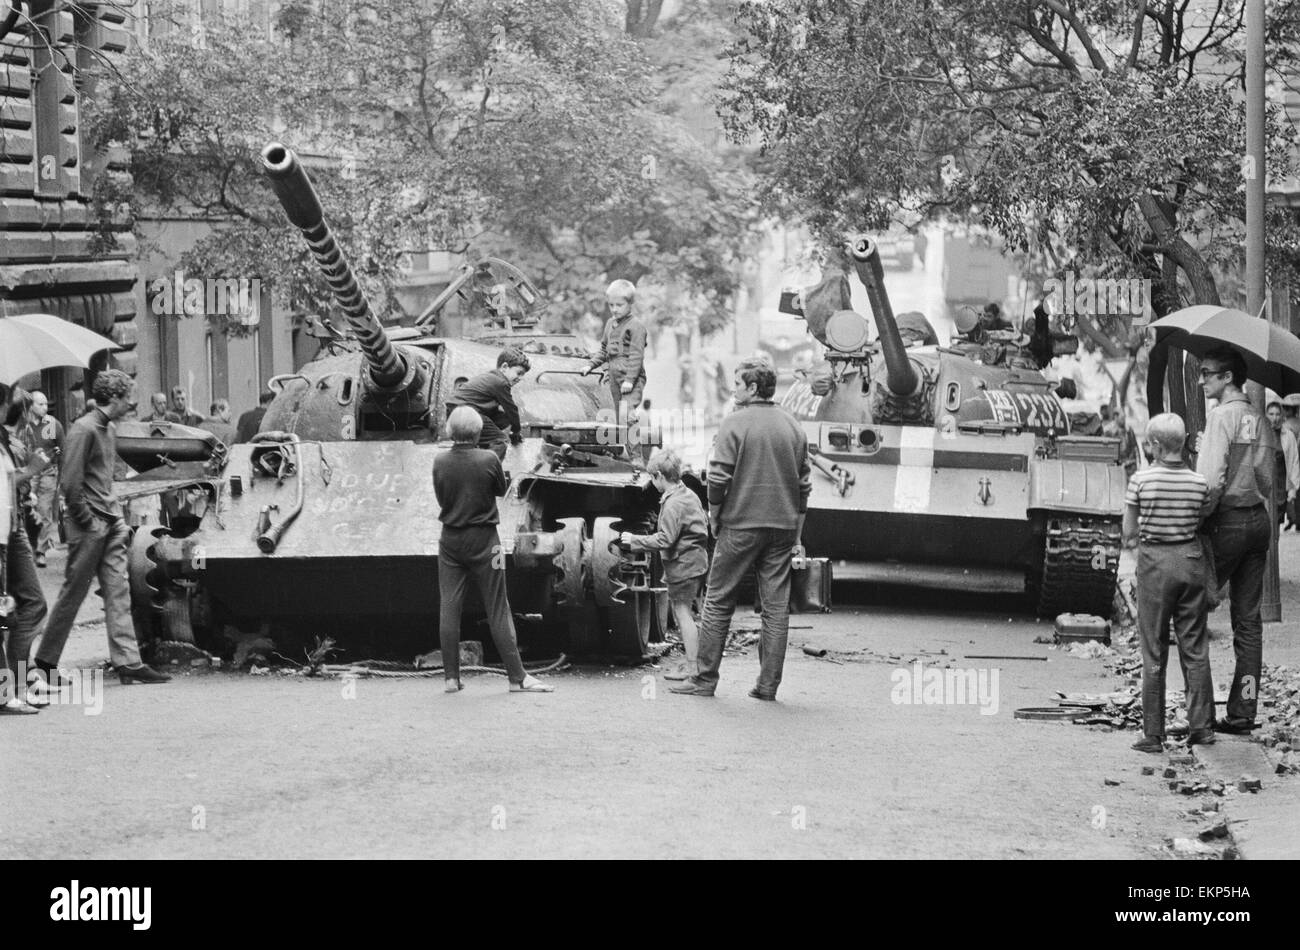 Das ausgebrannte Wrack eines russischen T54 Tanks hier im Zentrum von Prag nach Warschau Pakt Invasion des Landes zu sehen. Die Invasion war nach der Wahl von Alexander Dubček und seine Reformen für ein weniger zentralisierten Regime löste. 22. August 196 Stockfoto